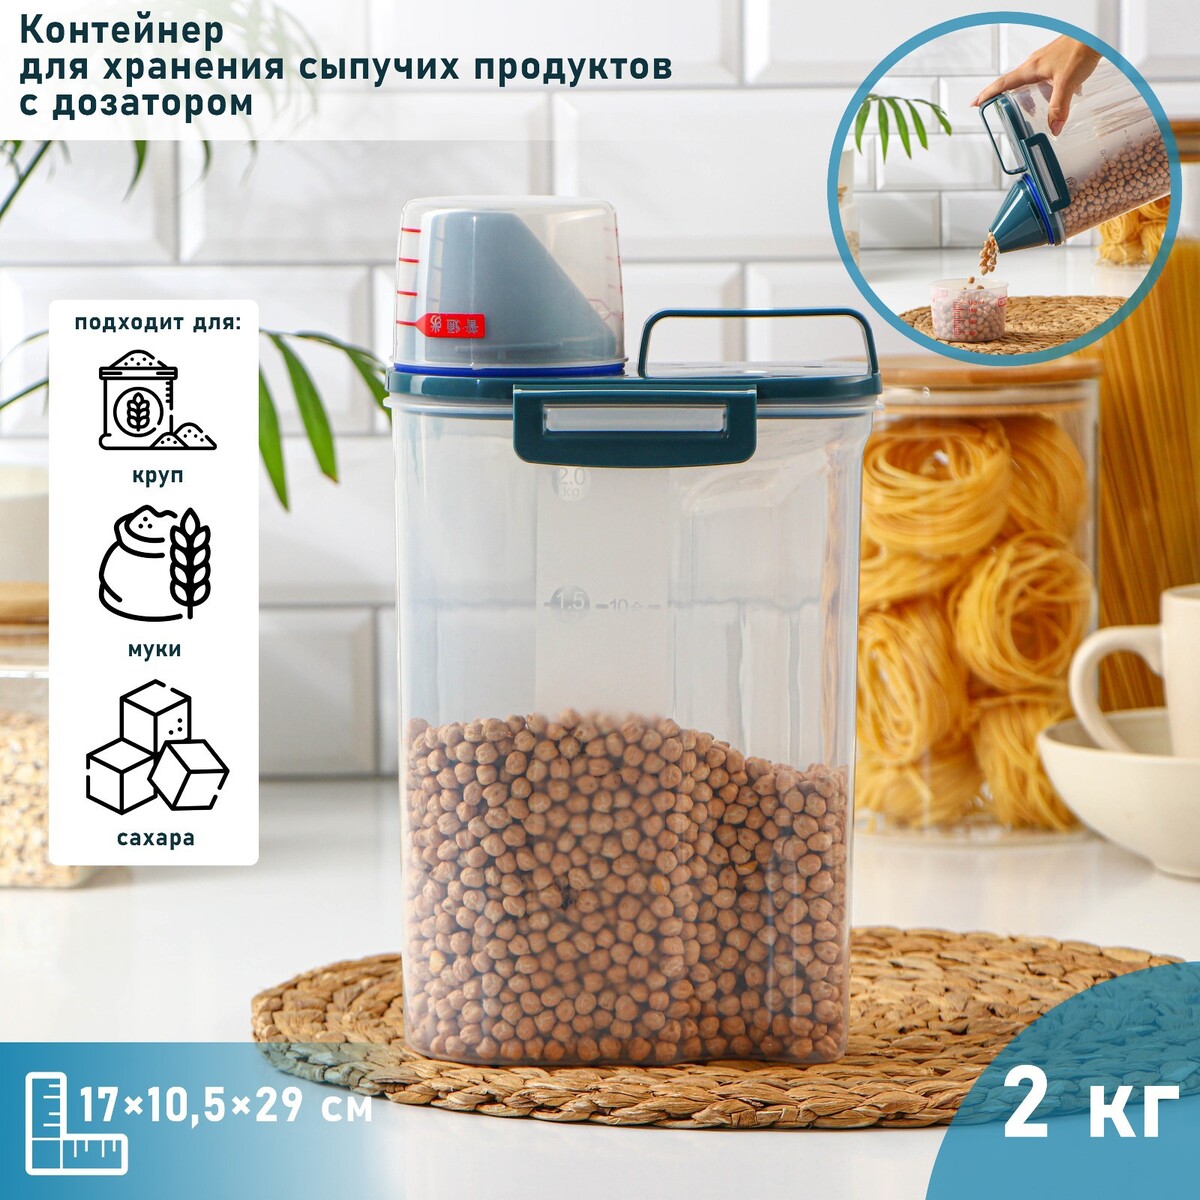 Контейнер пластиковый для хранения сыпучих продуктов с дозатором, 2 кг, 17×10,5×29 см, цвет прозрачный No brand